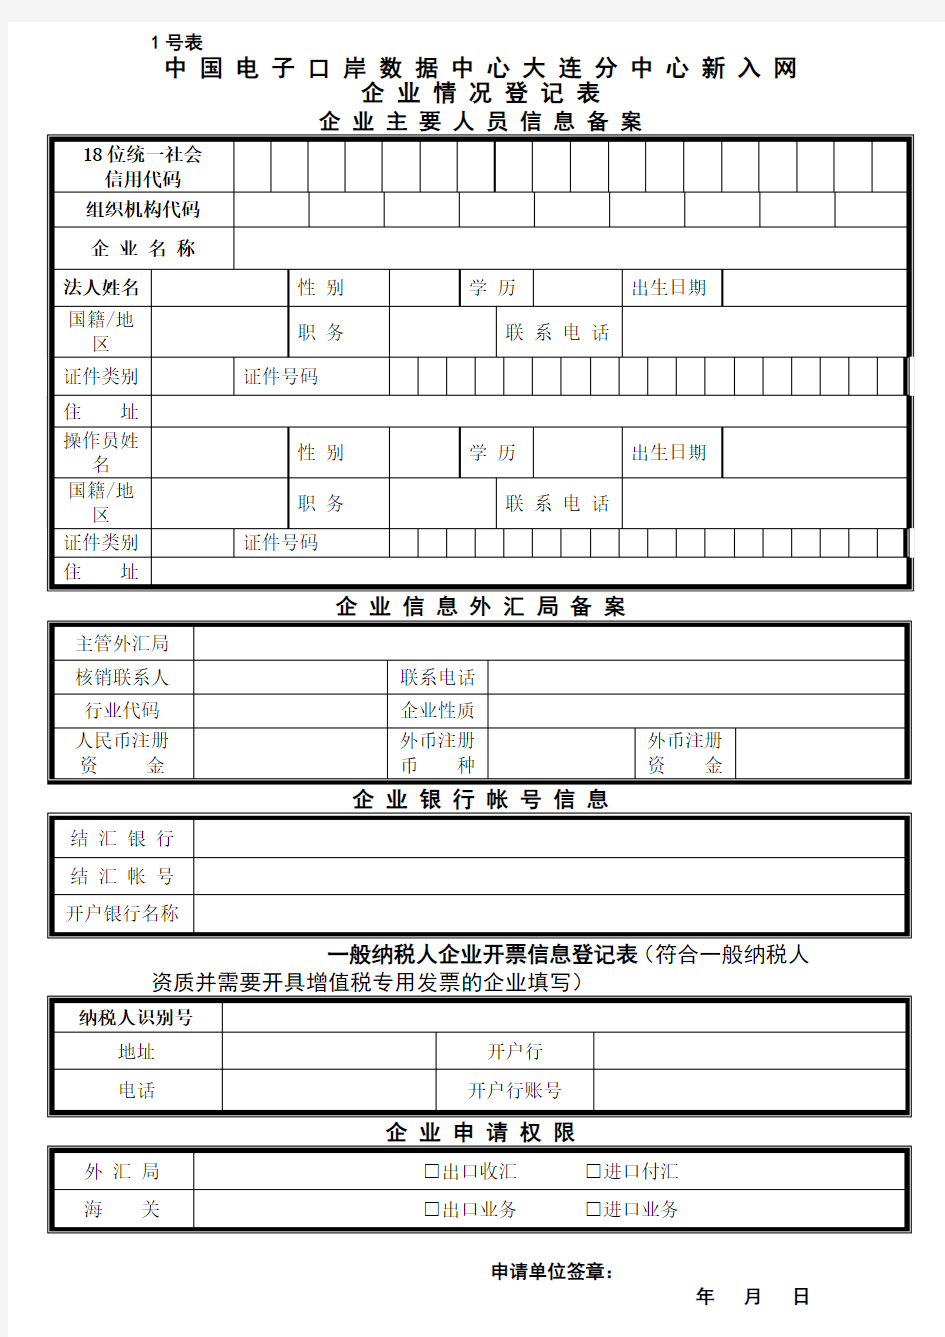 中国电子口岸数据中心大连分中心新入企业情况登记表